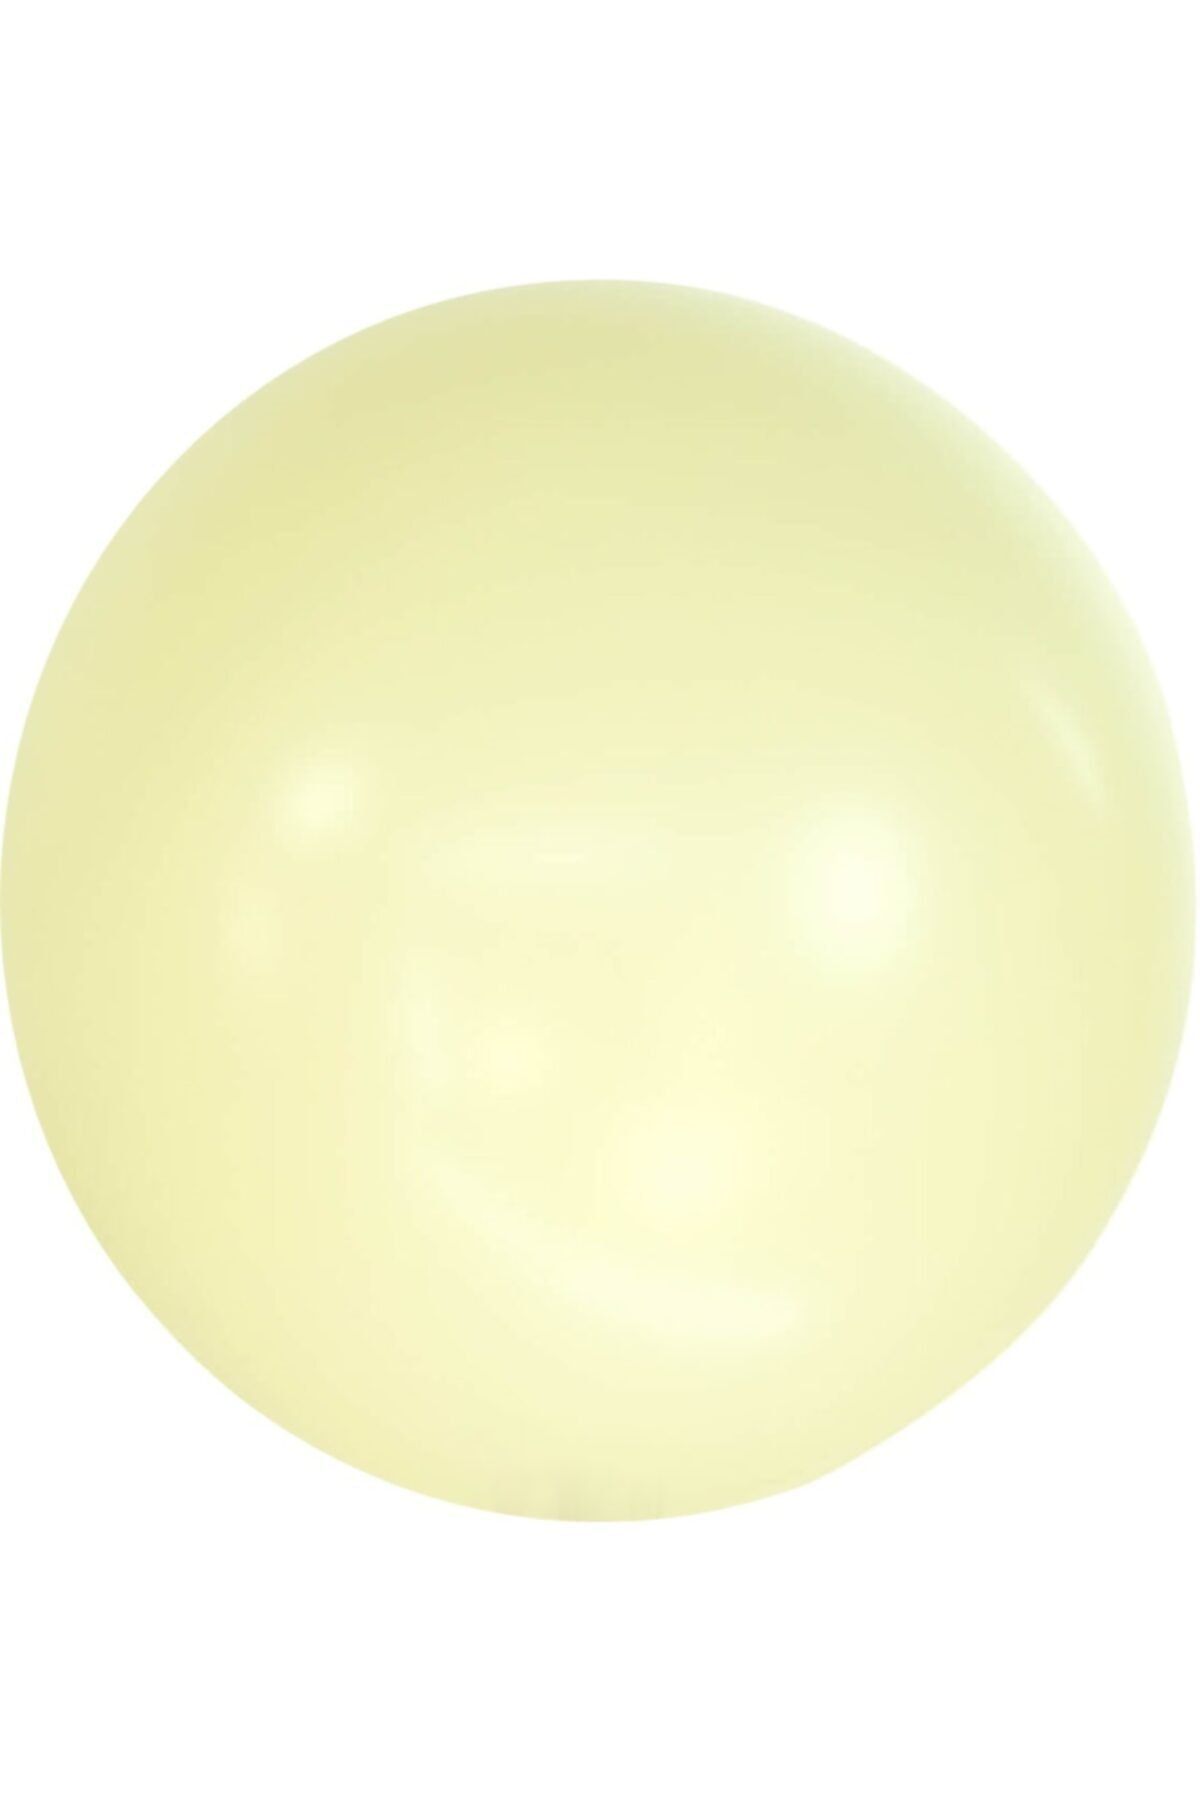 eğlencemarketi 36 Inç 90 Cm Makaron Jumbo Balon Sarı 1 Adet